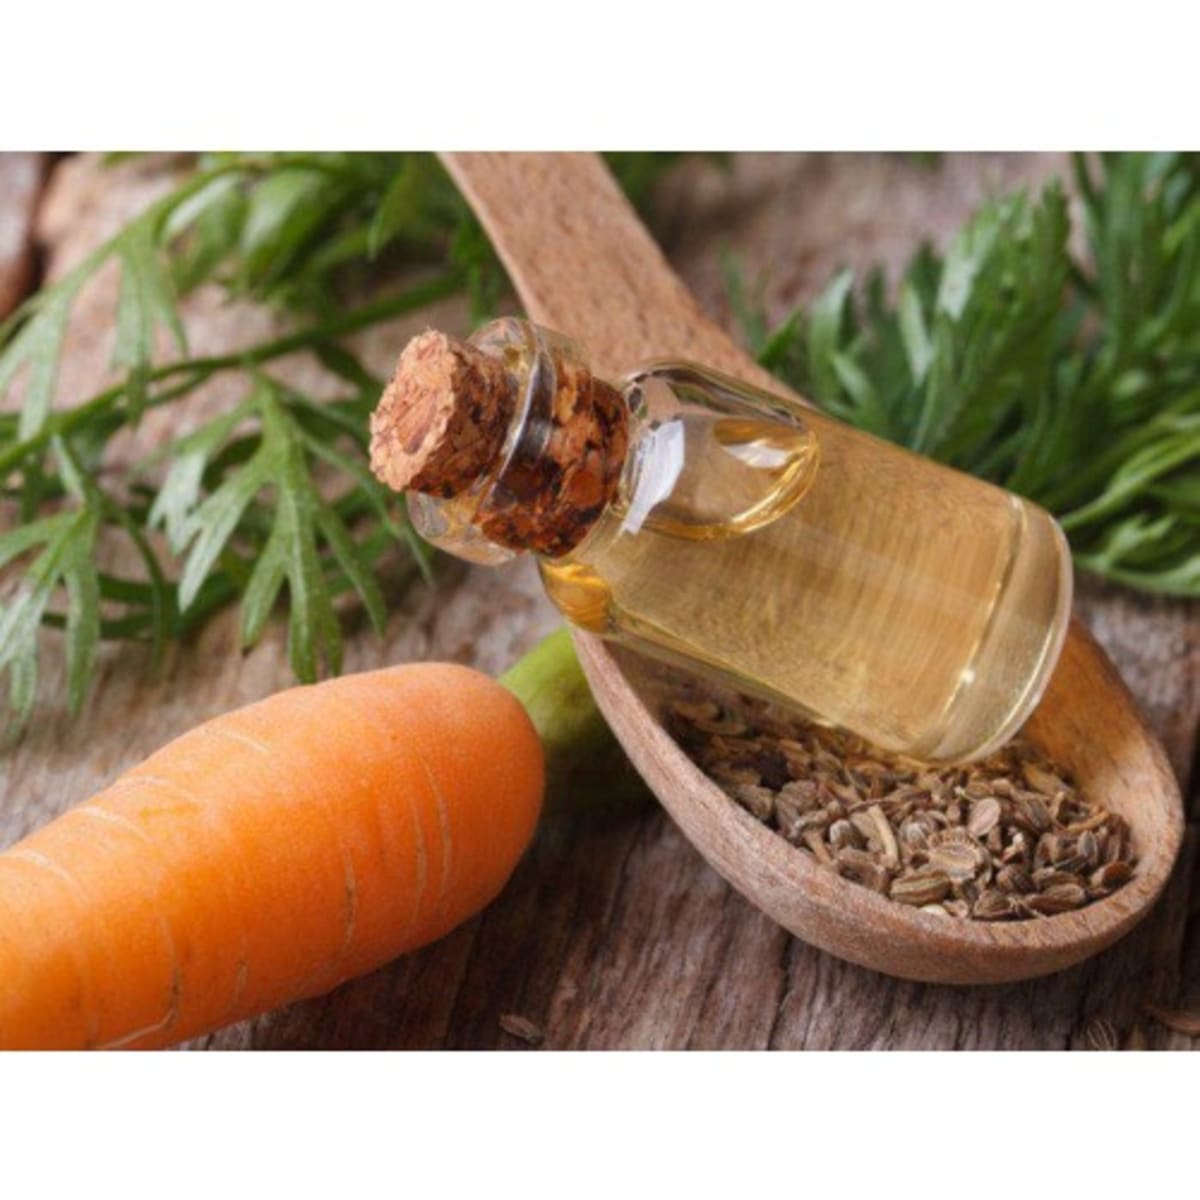 Carrot Seed Essential Oil — Wholesale Botanics